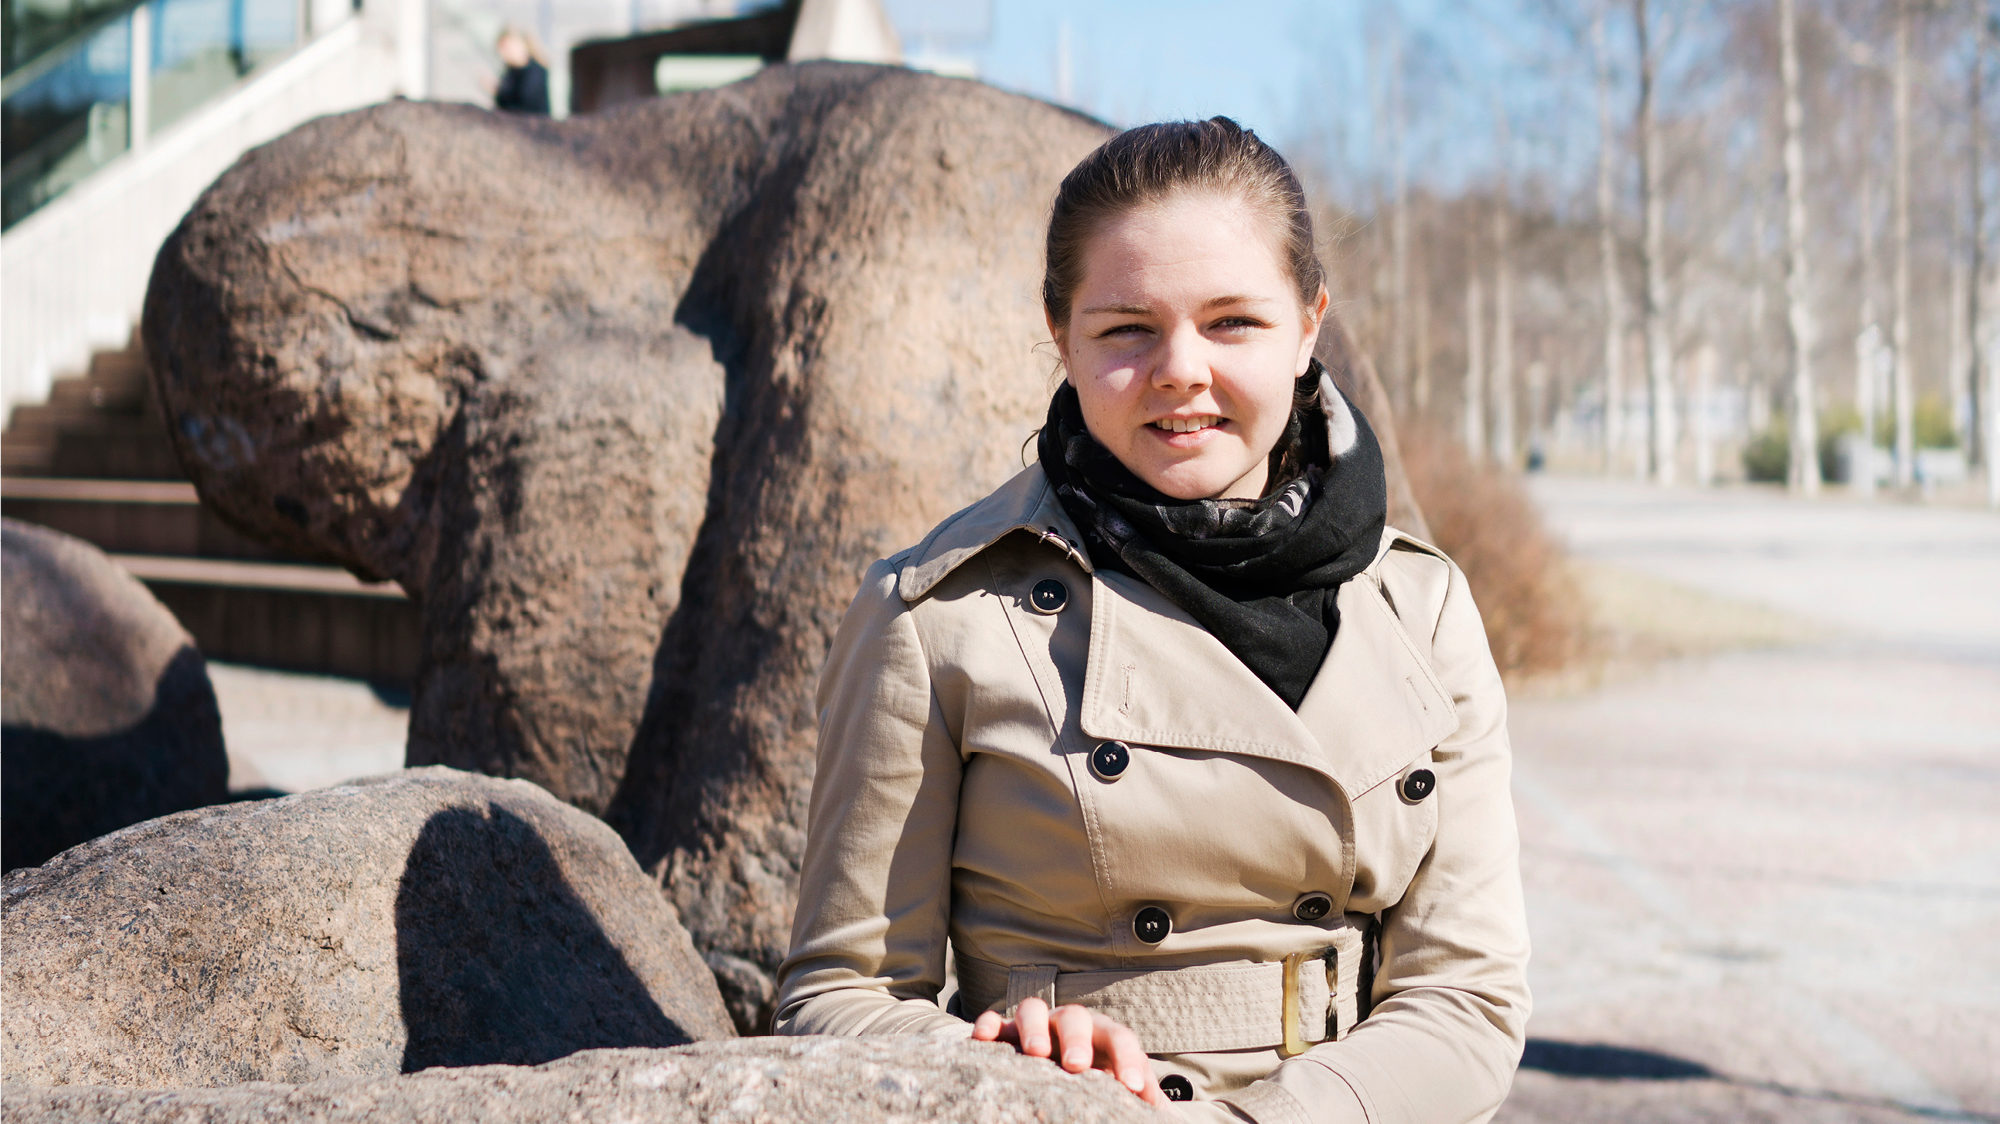 Maija Leino on JUKOn tekkiläinen luottamusmies ja edustaa Lappeenrannan teknillisessä yliopistossa nuorempia tutkijoita.